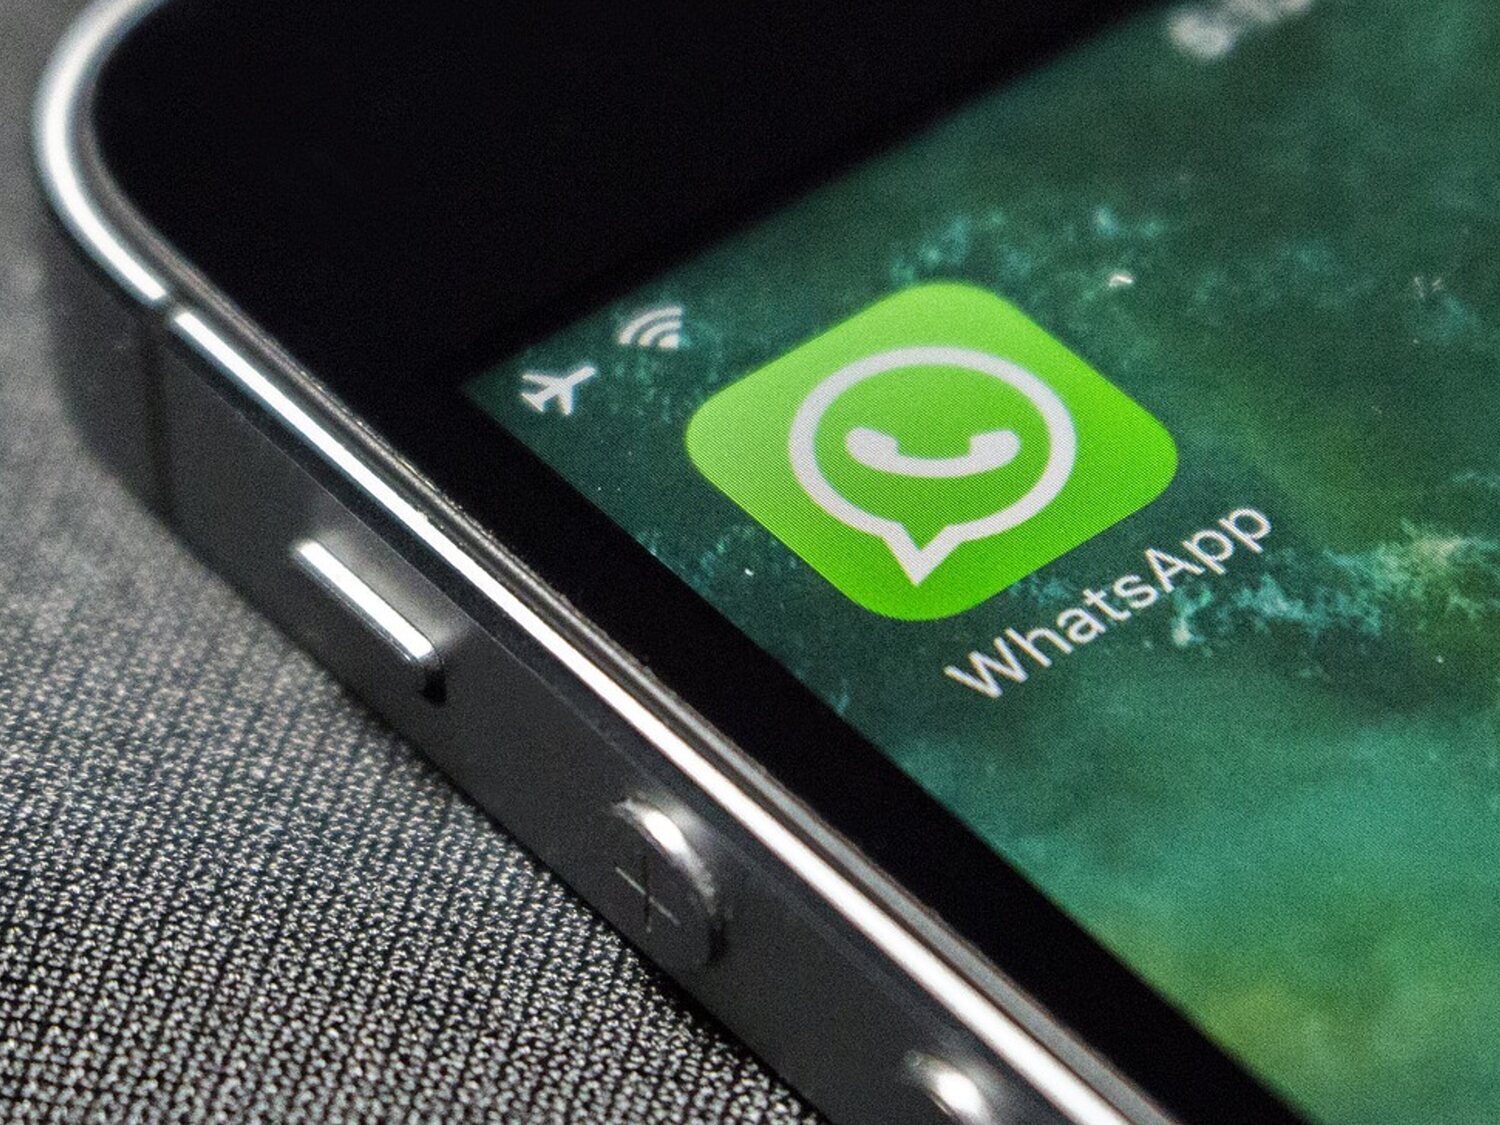 Compartir conversaciones privadas de WhatsApp o chats privados: ¿Qué dice el Código Penal?